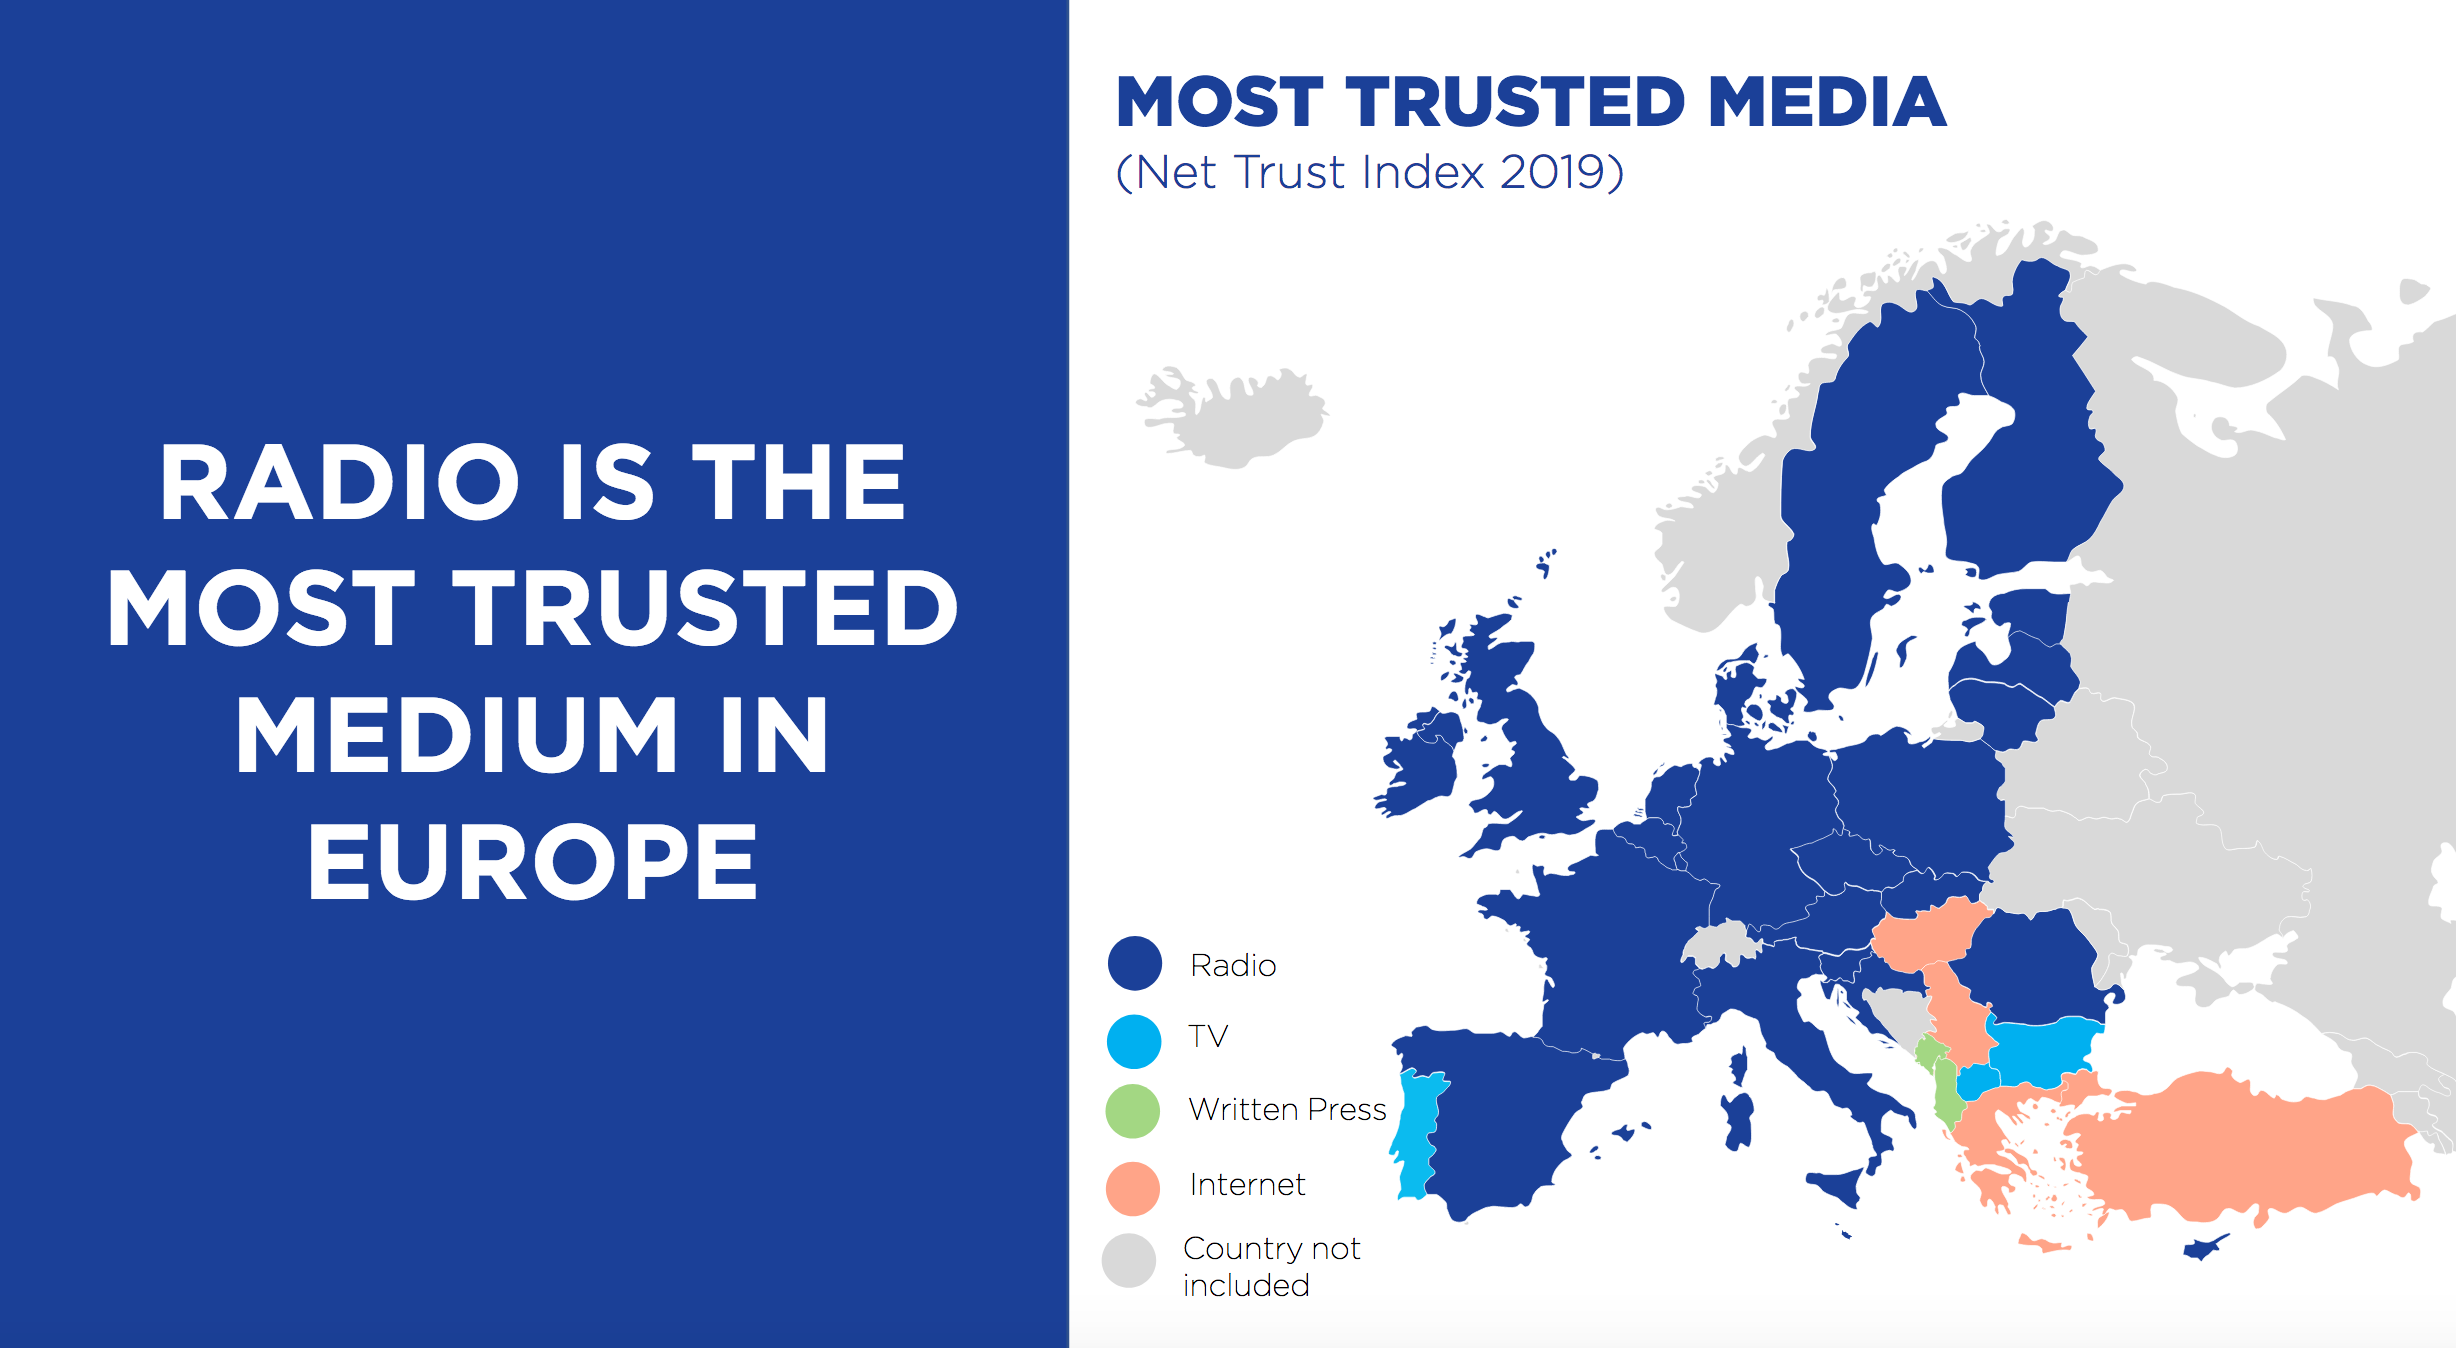 La radio est le média le plus fiable en Europe, obtenant le meilleur score dans 24 des 33 pays (pour 73% des personnes interrogées). Hormis le Portugal, les pays dans lesquels la radio n'est pas la plus fiable sont situés en Europe du Sud-Est © EBU Media Intelligence Service –Trust in Media 2020